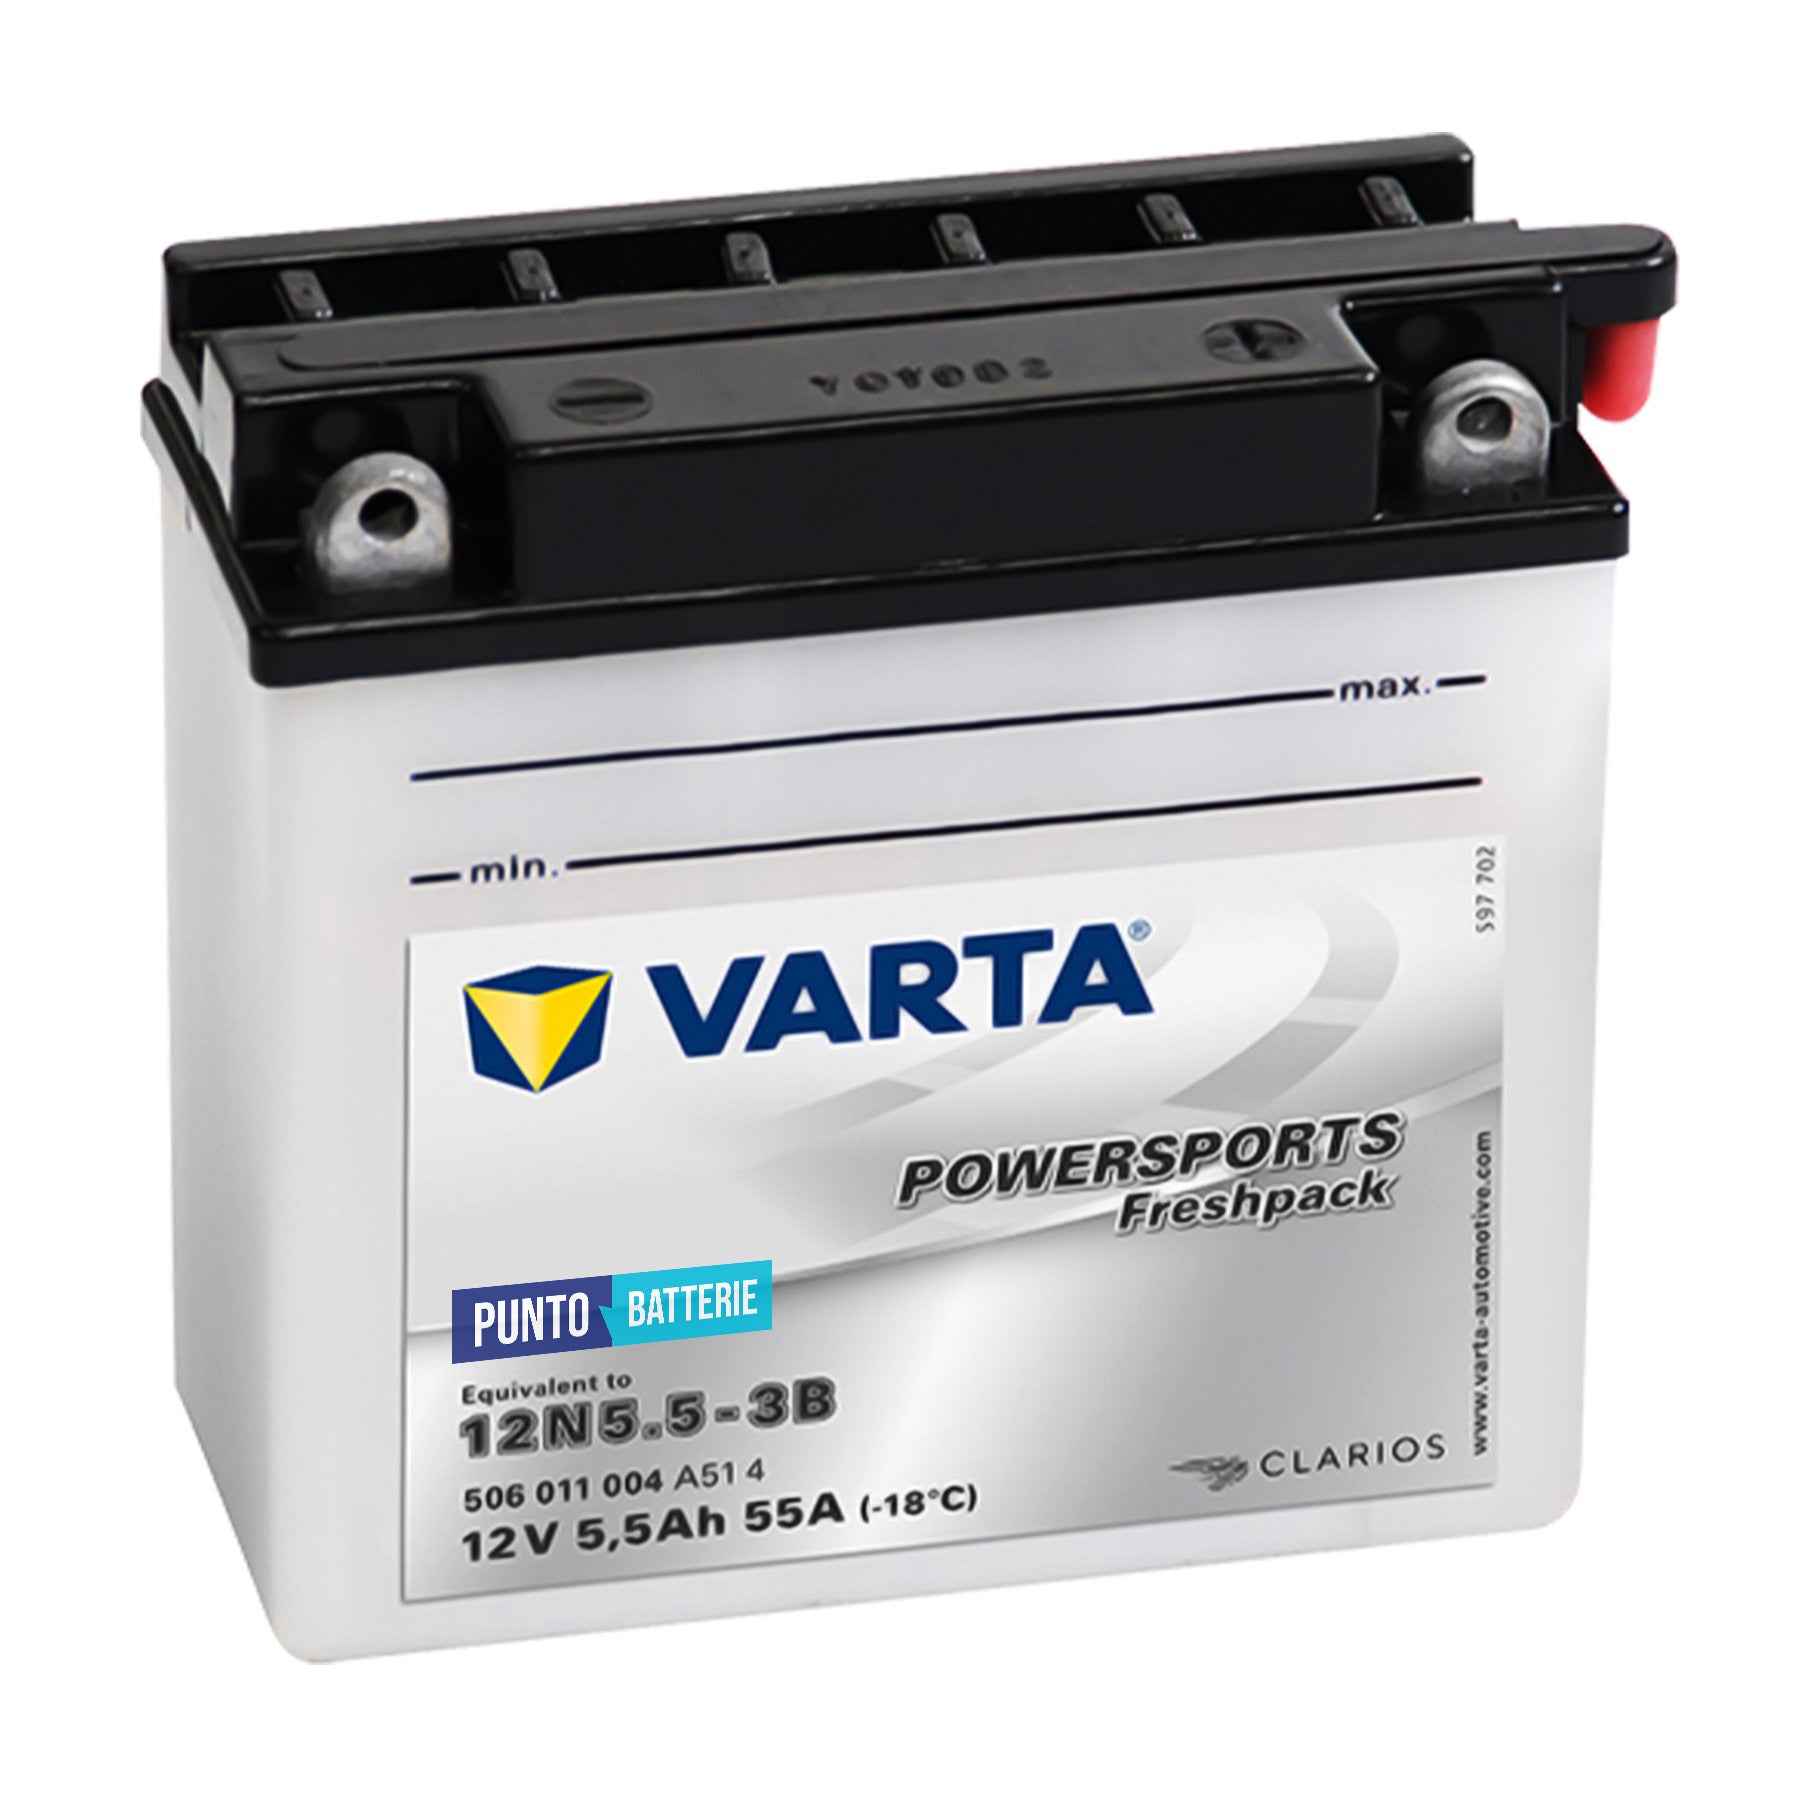 Batteria Varta 12N5.5-3B - Powersport Freshpack (12V, 5.5Ah, 55A)